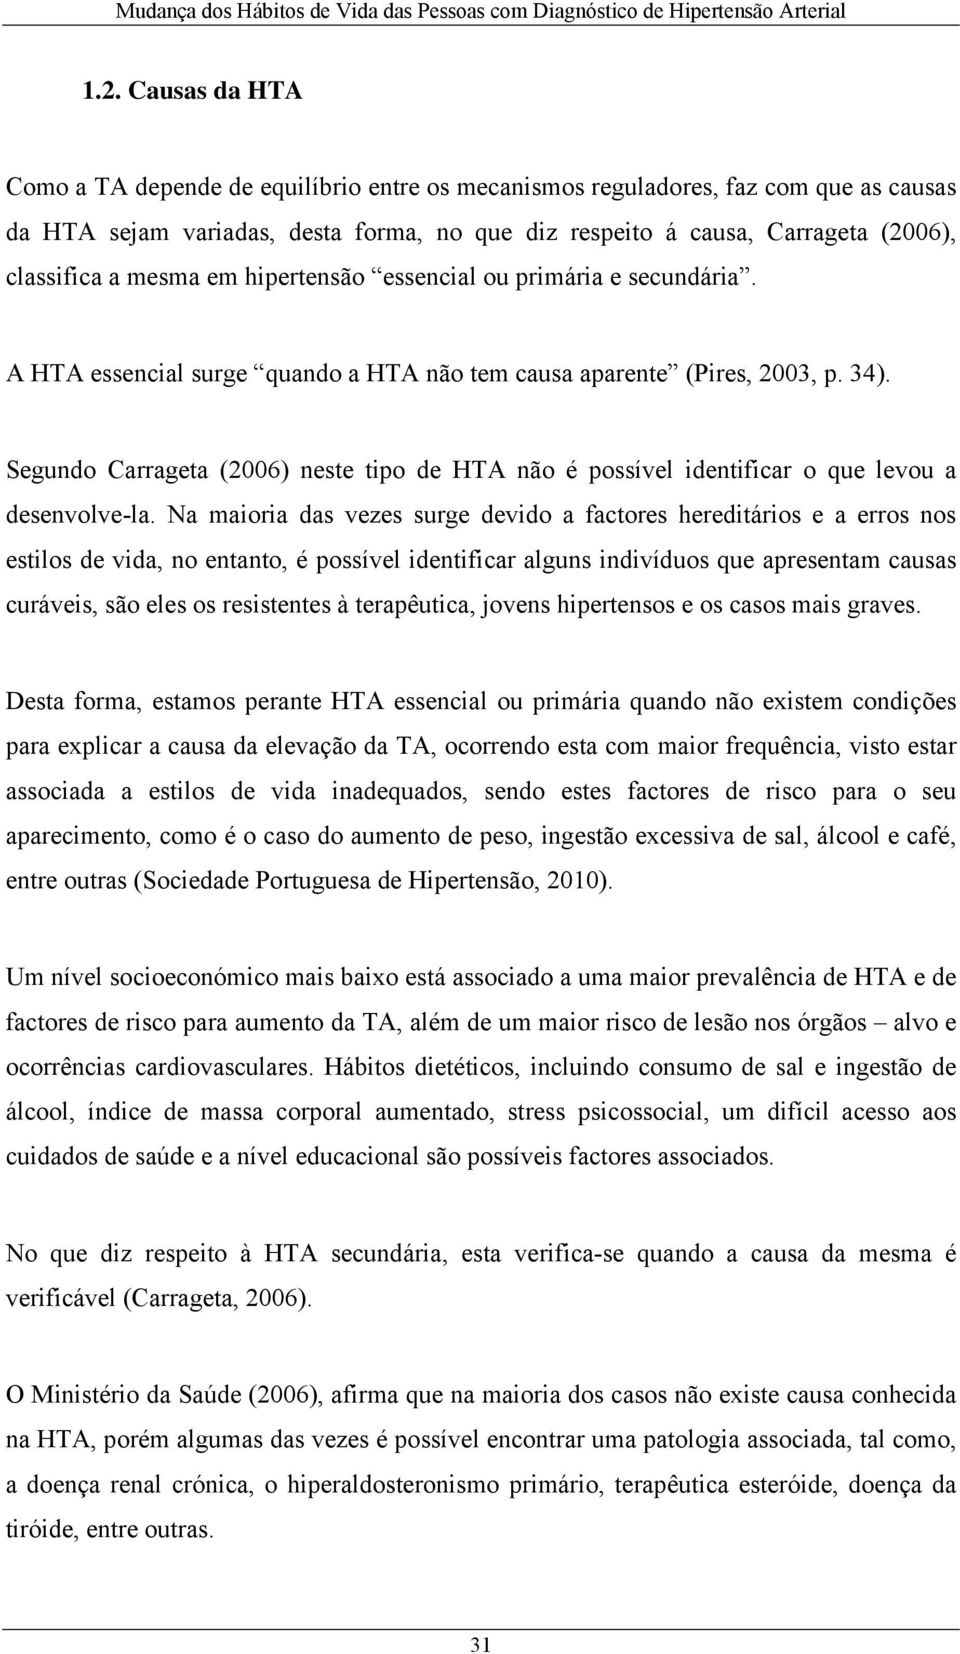 Segundo Carrageta (2006) neste tipo de HTA não é possível identificar o que levou a desenvolve-la.